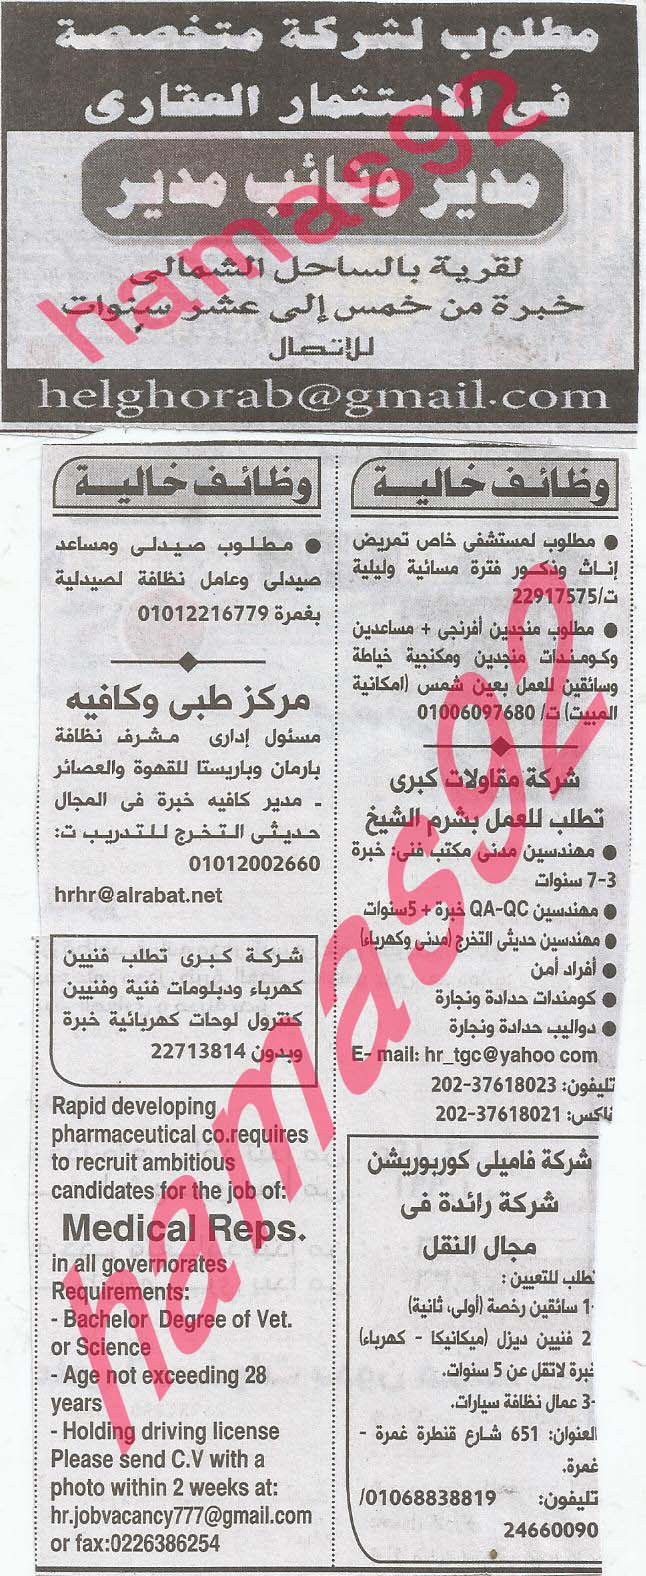 وظائف خالية فى جريدة الاهرام الجمعة 13-09-2013 14